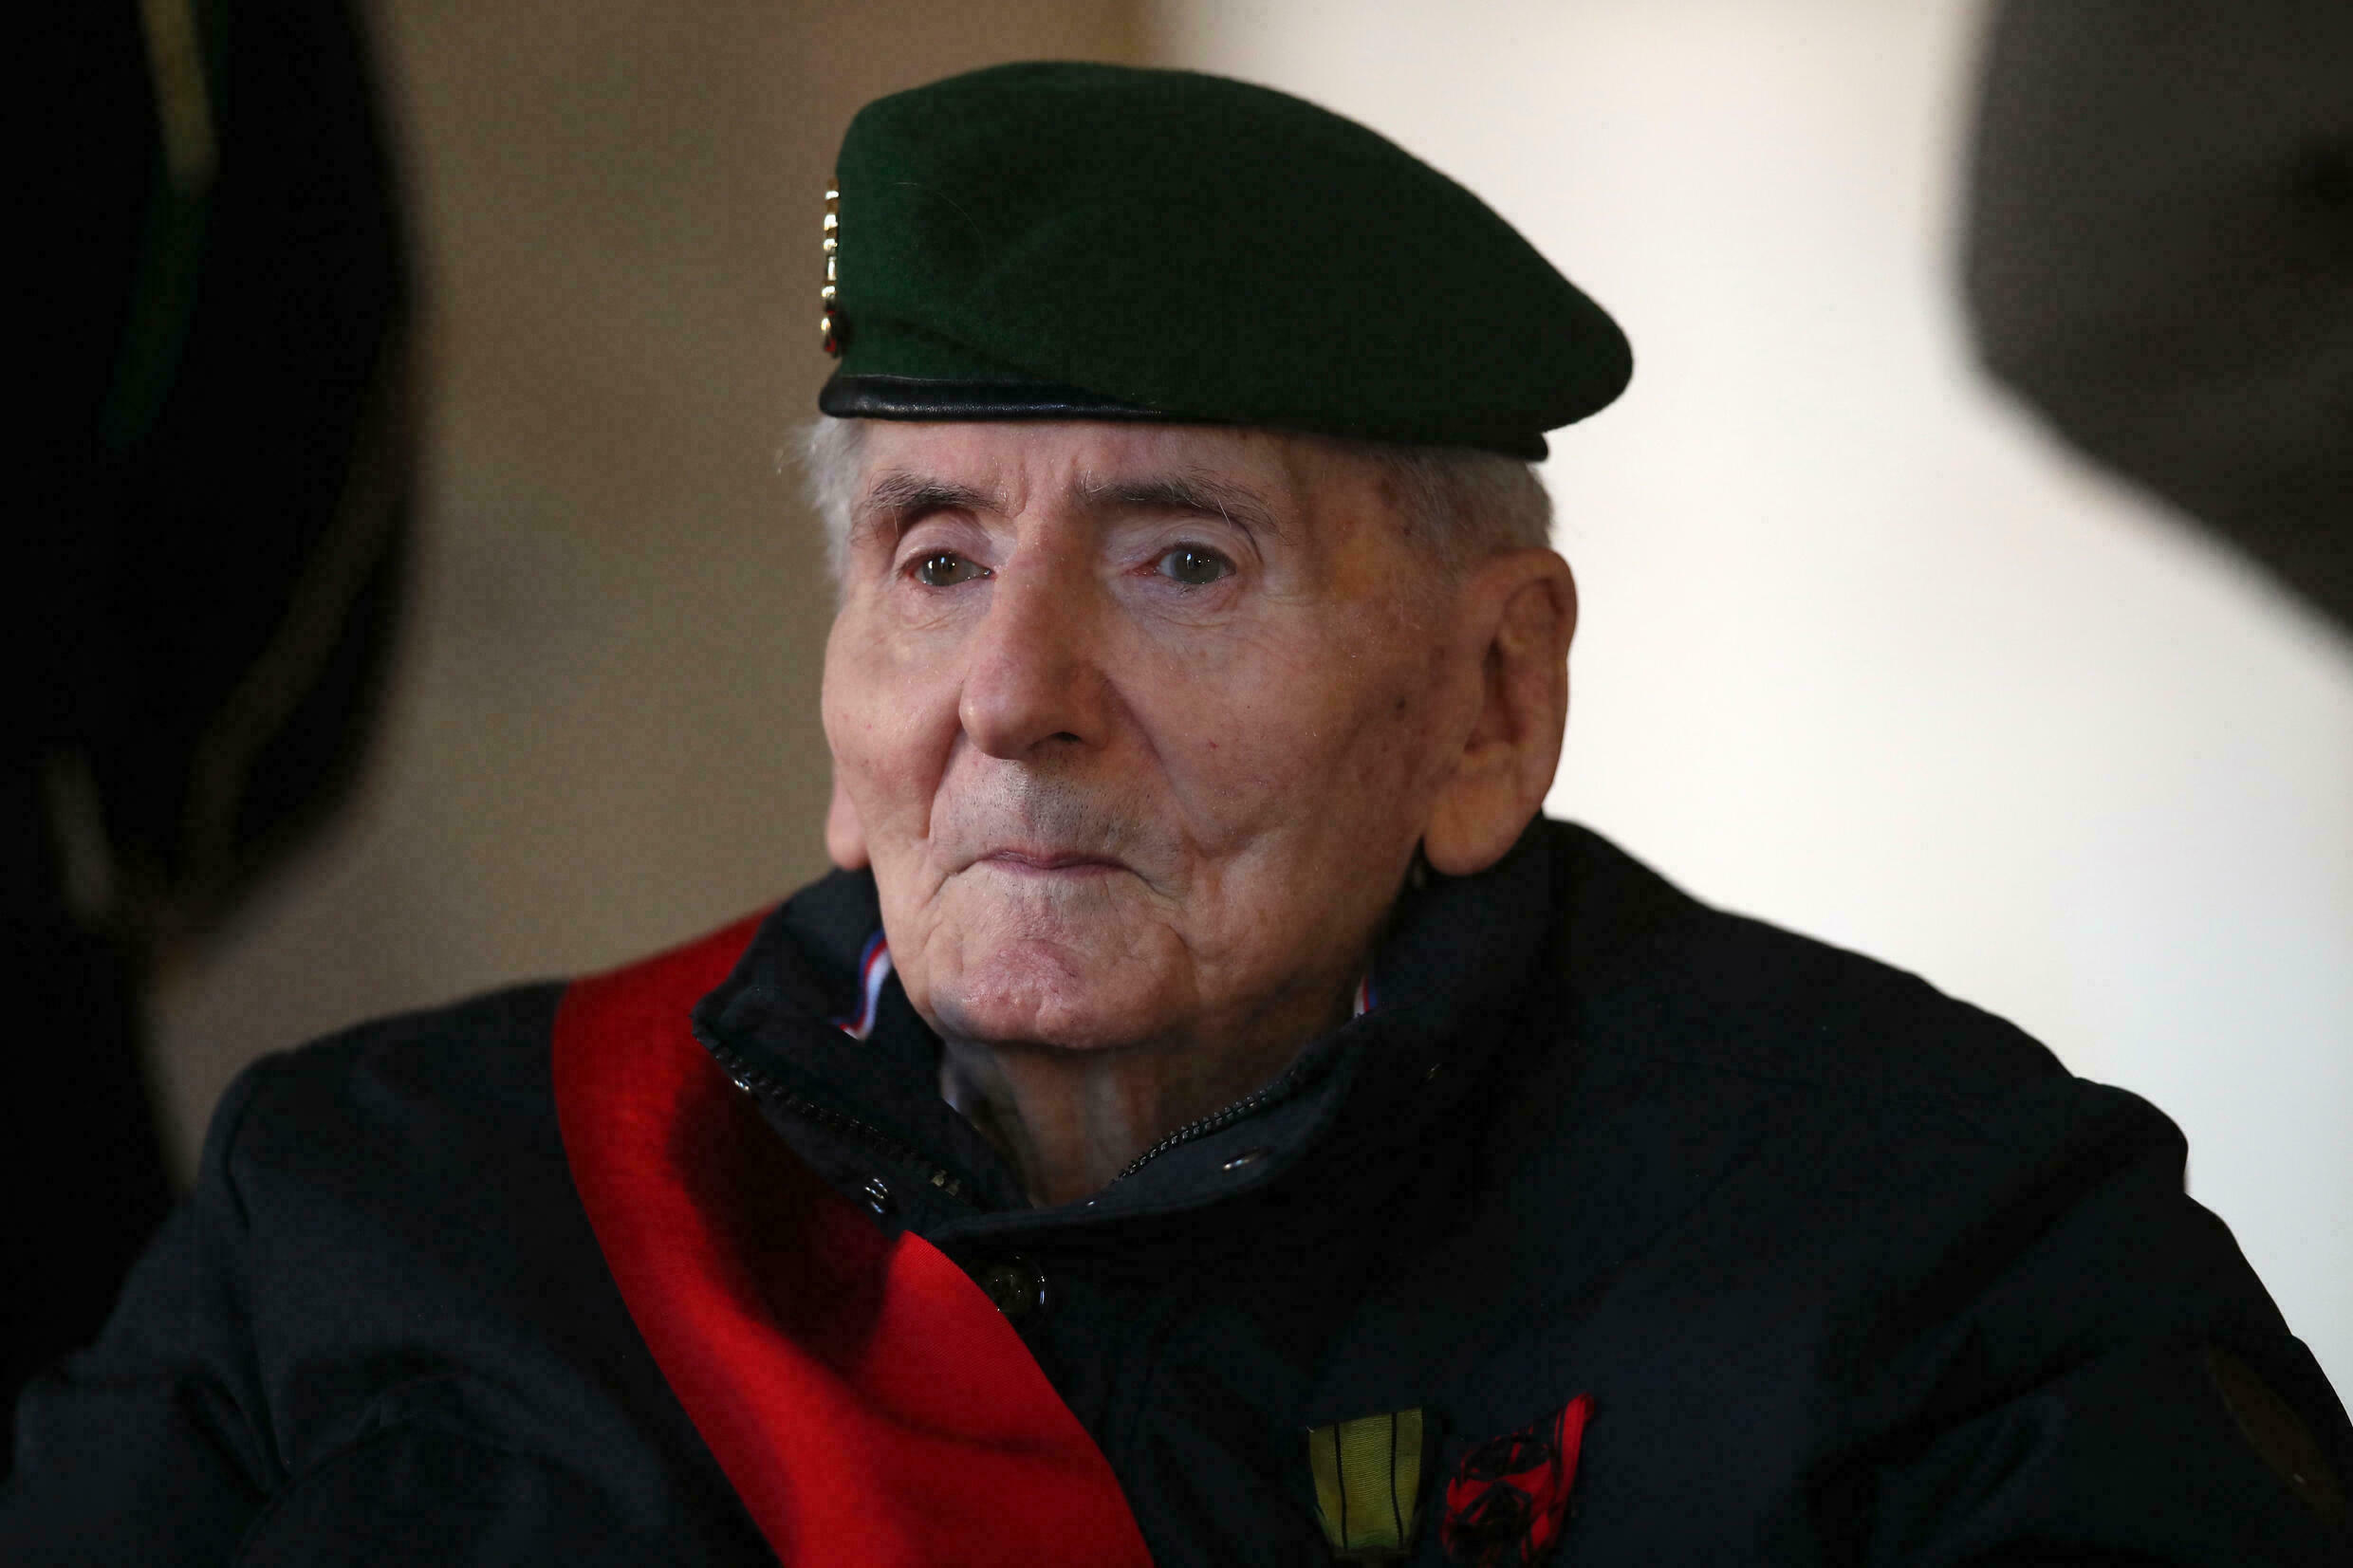 Rinden tributo en Francia al último héroe de la Resistencia contra nazis